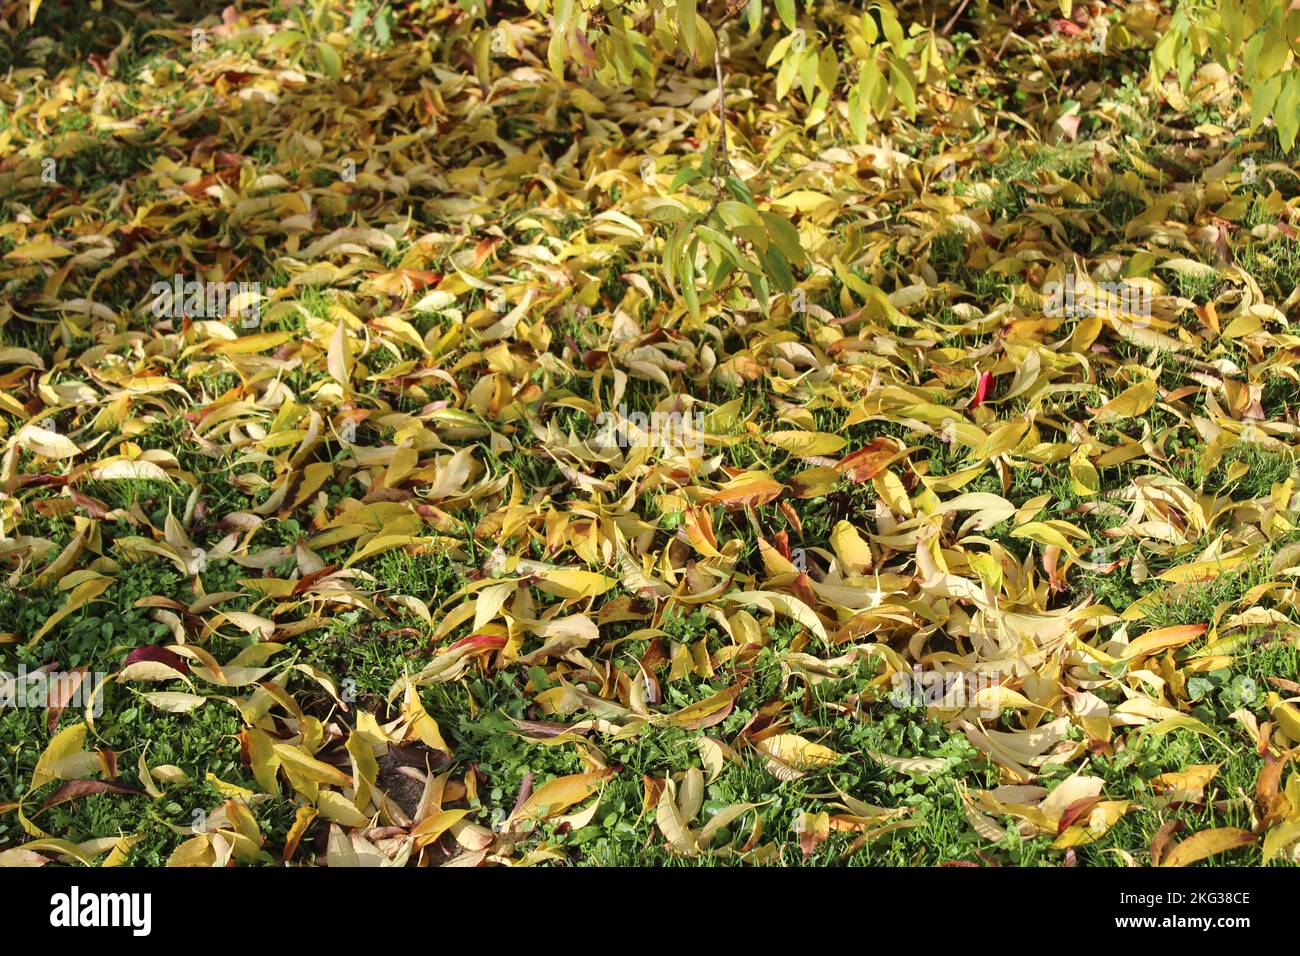 forsythia leaves in the garden Stock Photo